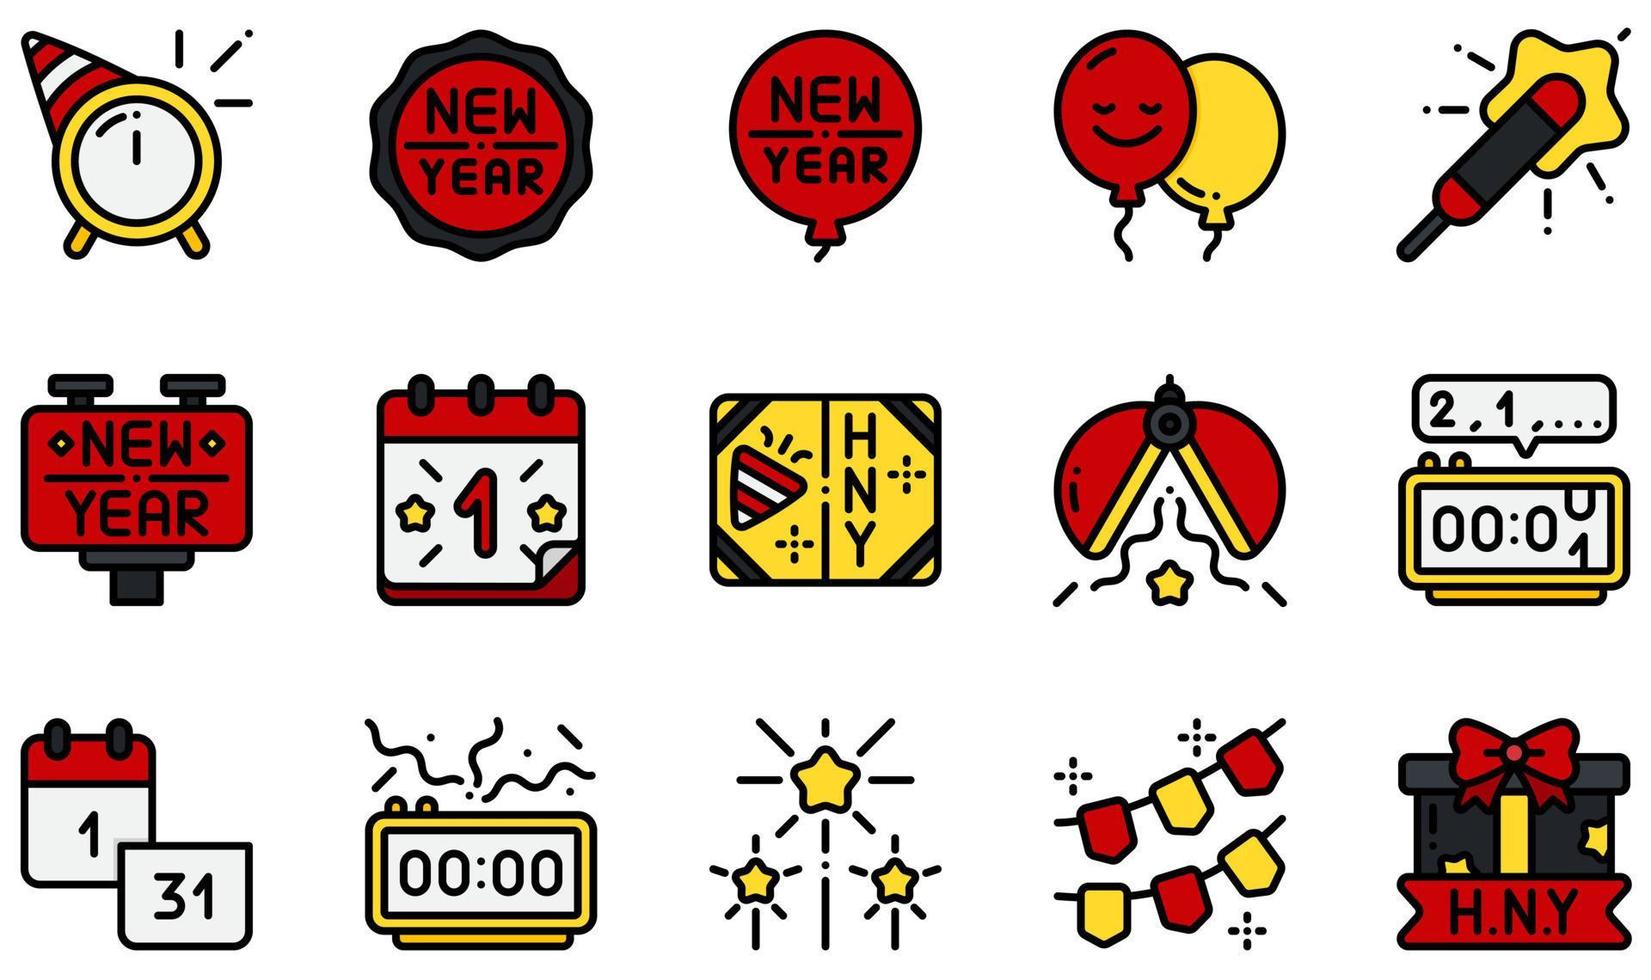 conjunto de ícones vetoriais relacionados ao ano novo. contém ícones como crachá, balão, calendário, cartão, contagem regressiva, fogos de artifício e muito mais. vetor